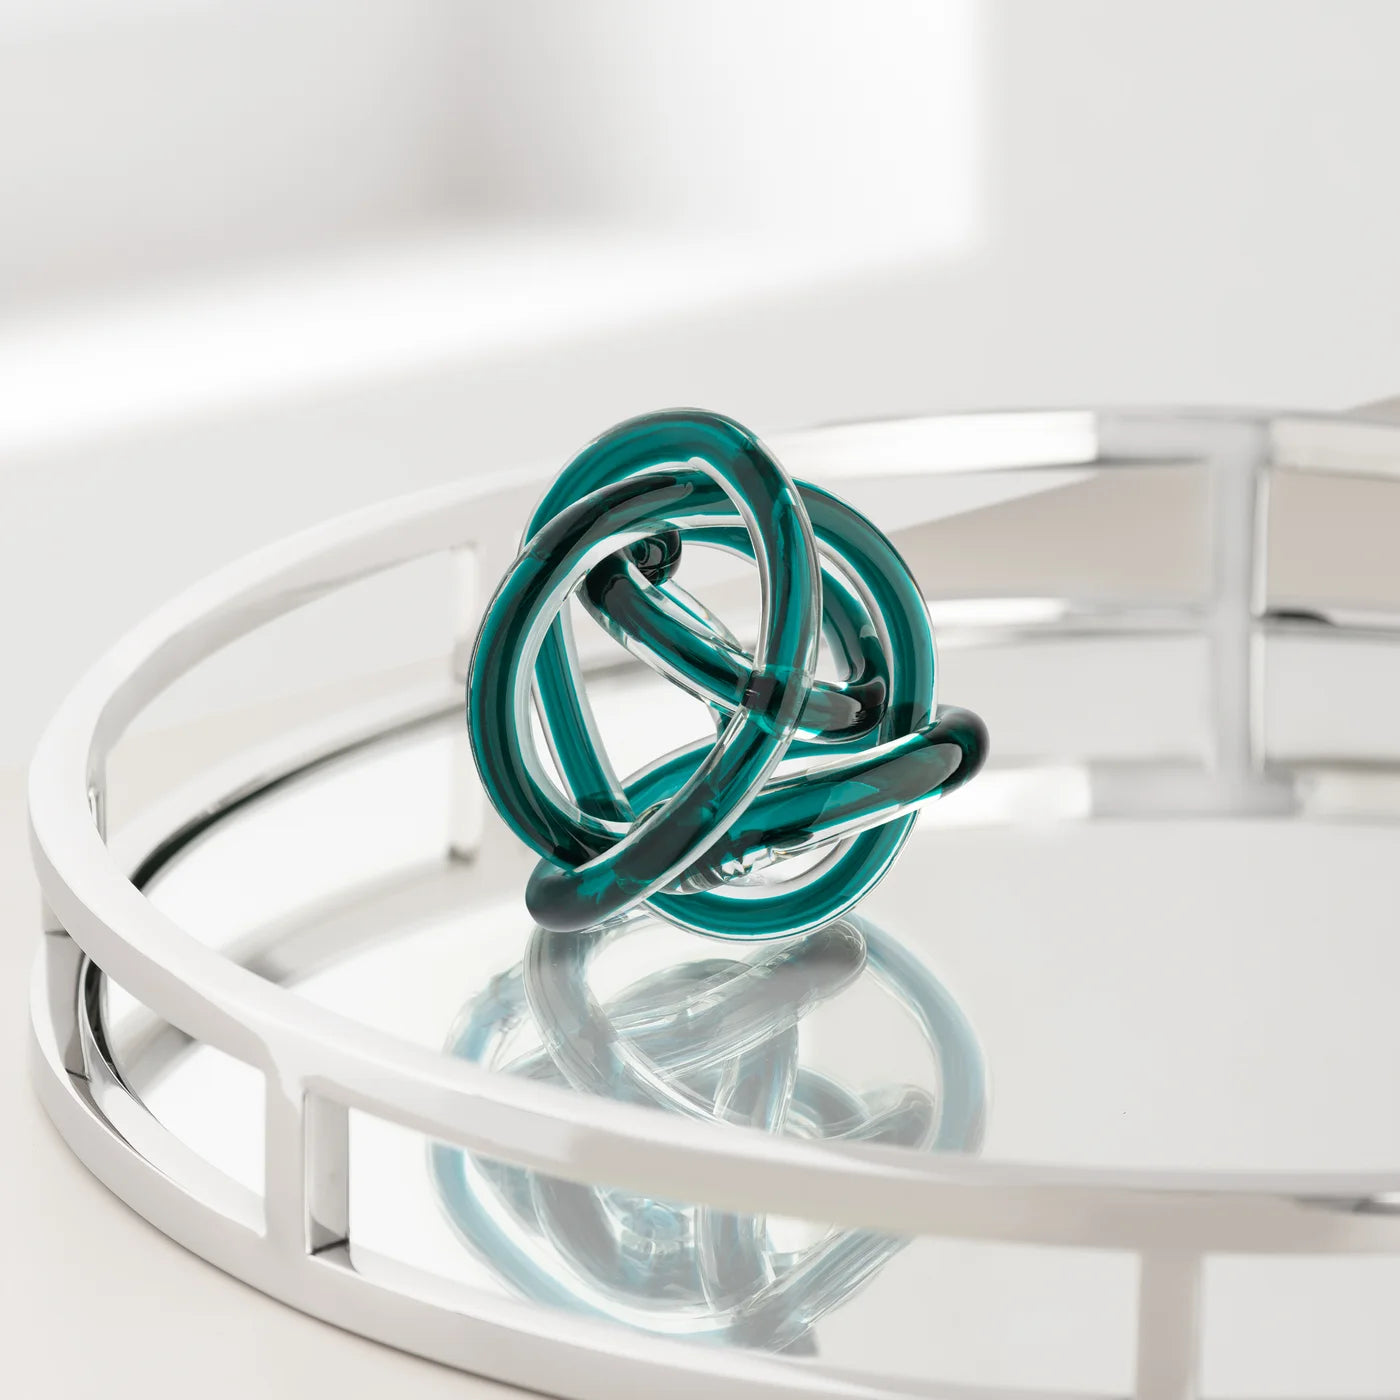 Orbit Glass Knot 3" Diameter Decor Ball - Teal